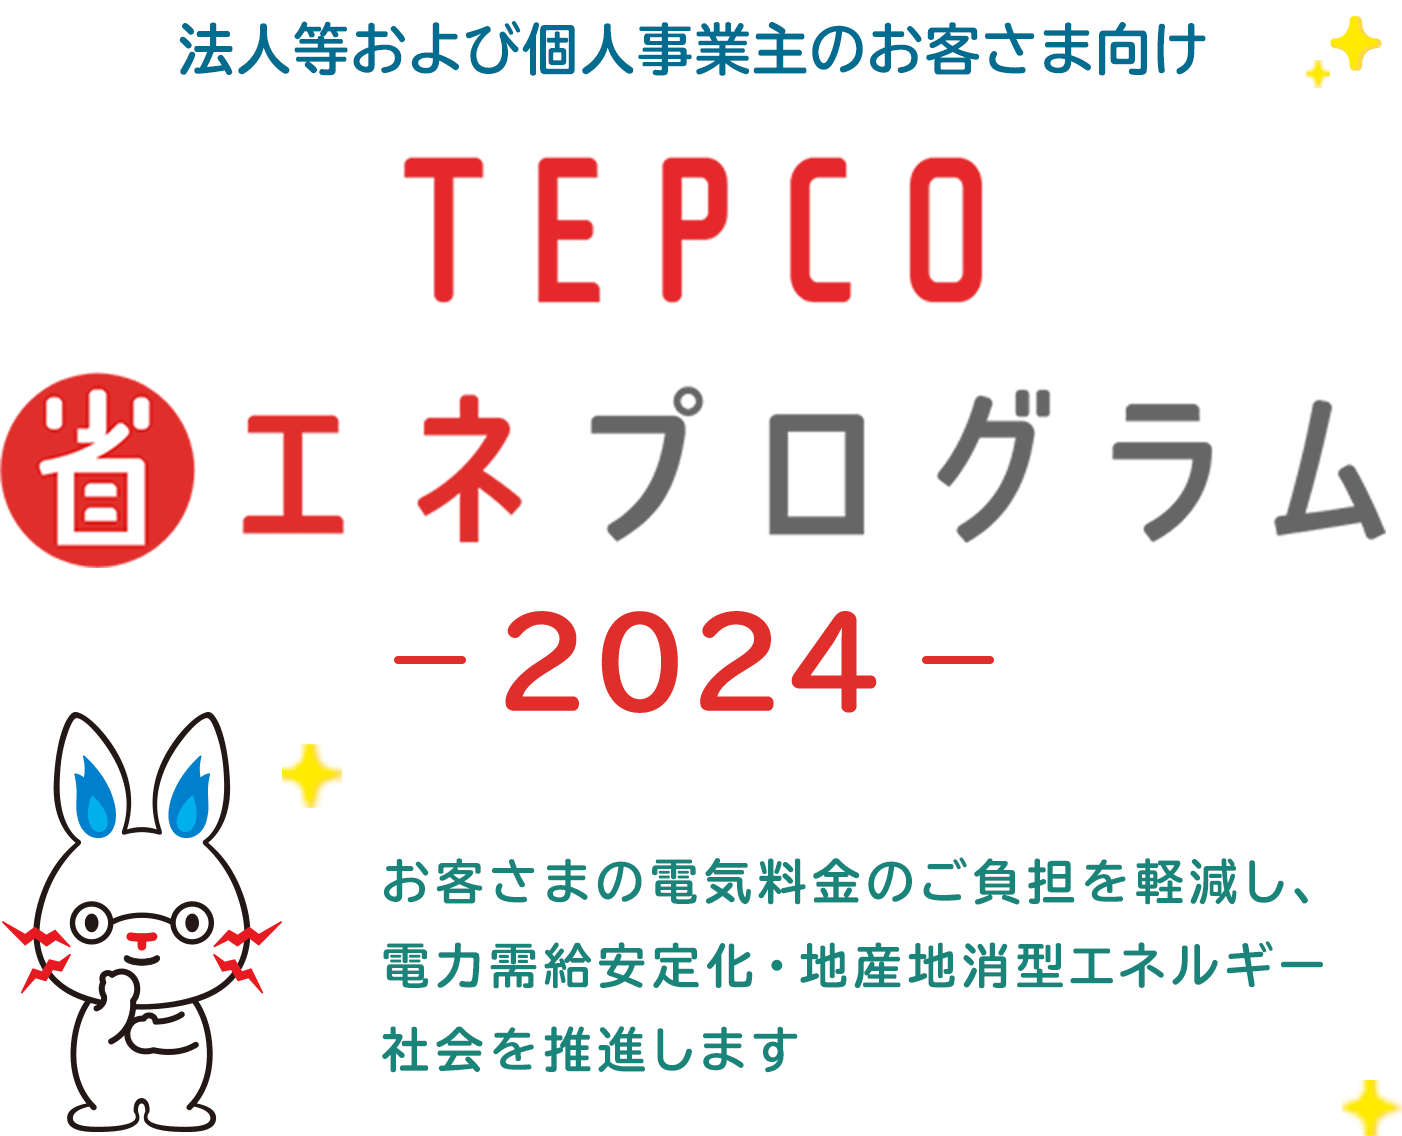 法人等および個人事業主のお客さま向け TEPCO 省エネプログラム -2024- お客さまの電気料金のご負担を軽減し、電力需給安定化・地産地消型エネルギー社会を推進します